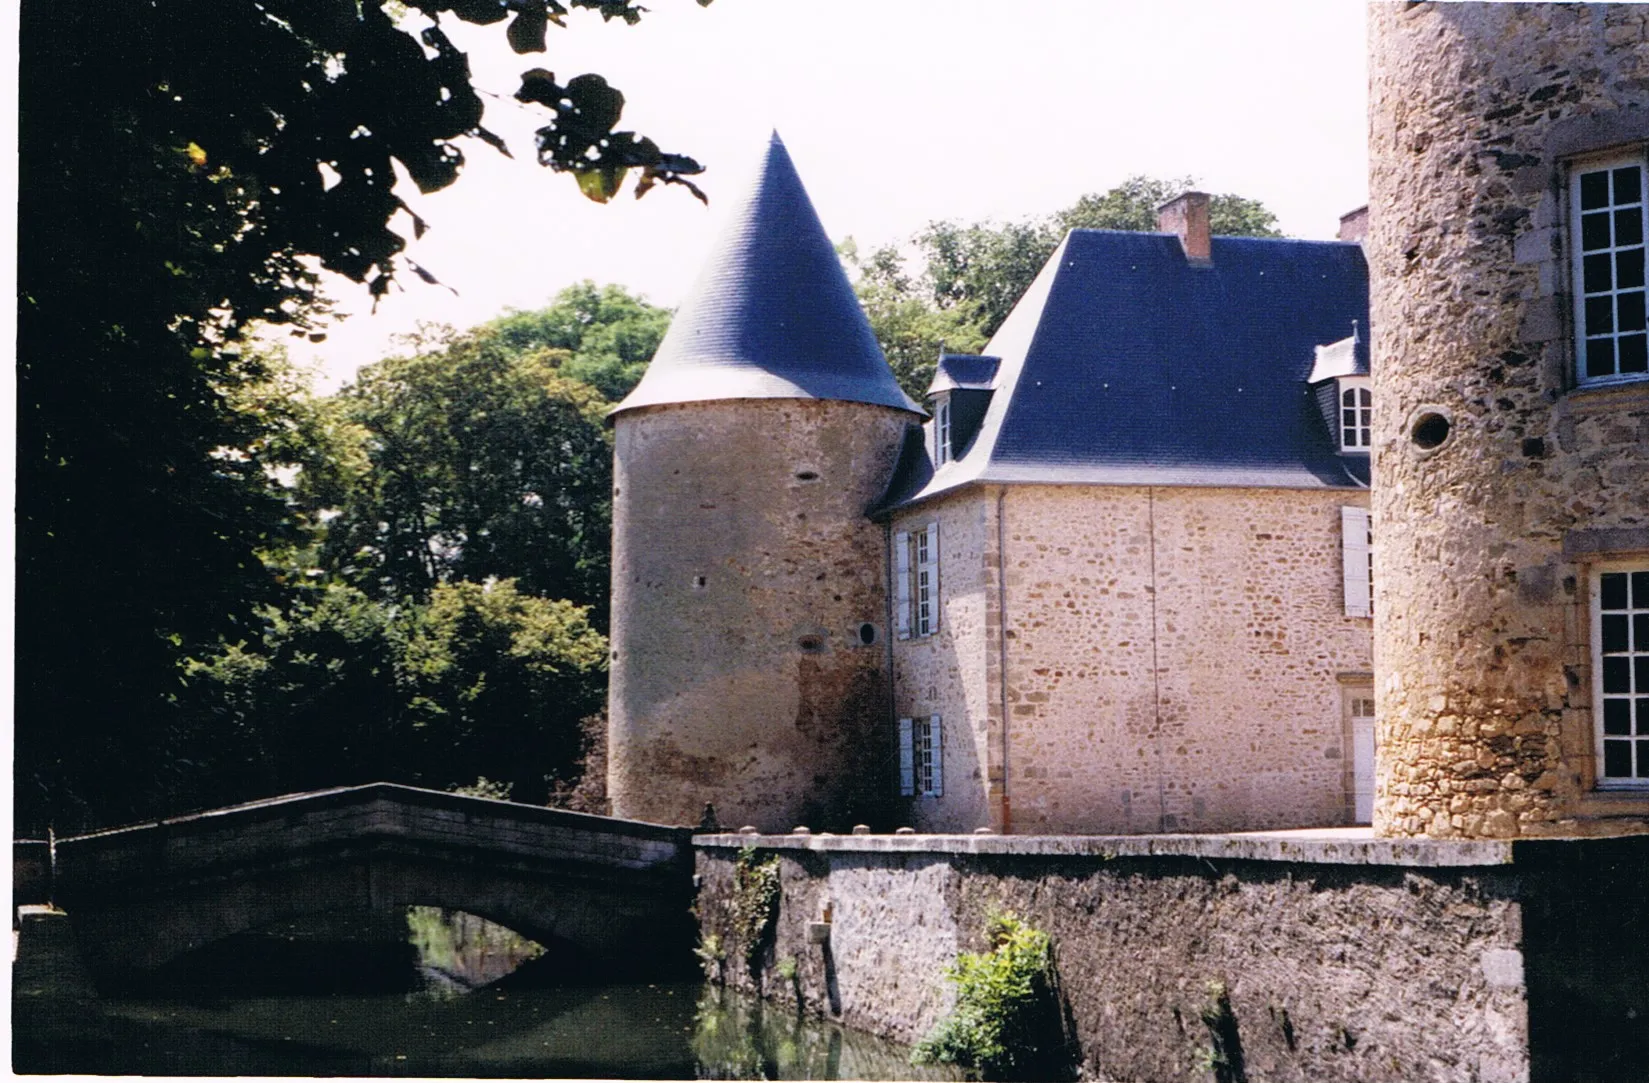 Photo showing: Datant des premières croisades, le Château de Rochebrune était une ancienne place fortifiée stratégiquement située au carrefour des routes de Limoges, Angoulême et Niort.
La première tour fut édifiée par Jourdain Ier avant que celui-ci ne parte pour Jérusalem et n’y meure en 1099. Les trois autres tours n’apparurent qu’un siècle plus tard. Les murs de chacune d’elles, épais de deux mètres, sont percés de meurtrières dont les angles de vue cumulés ne laissent aucun angle mort aux défenseurs du lieu.